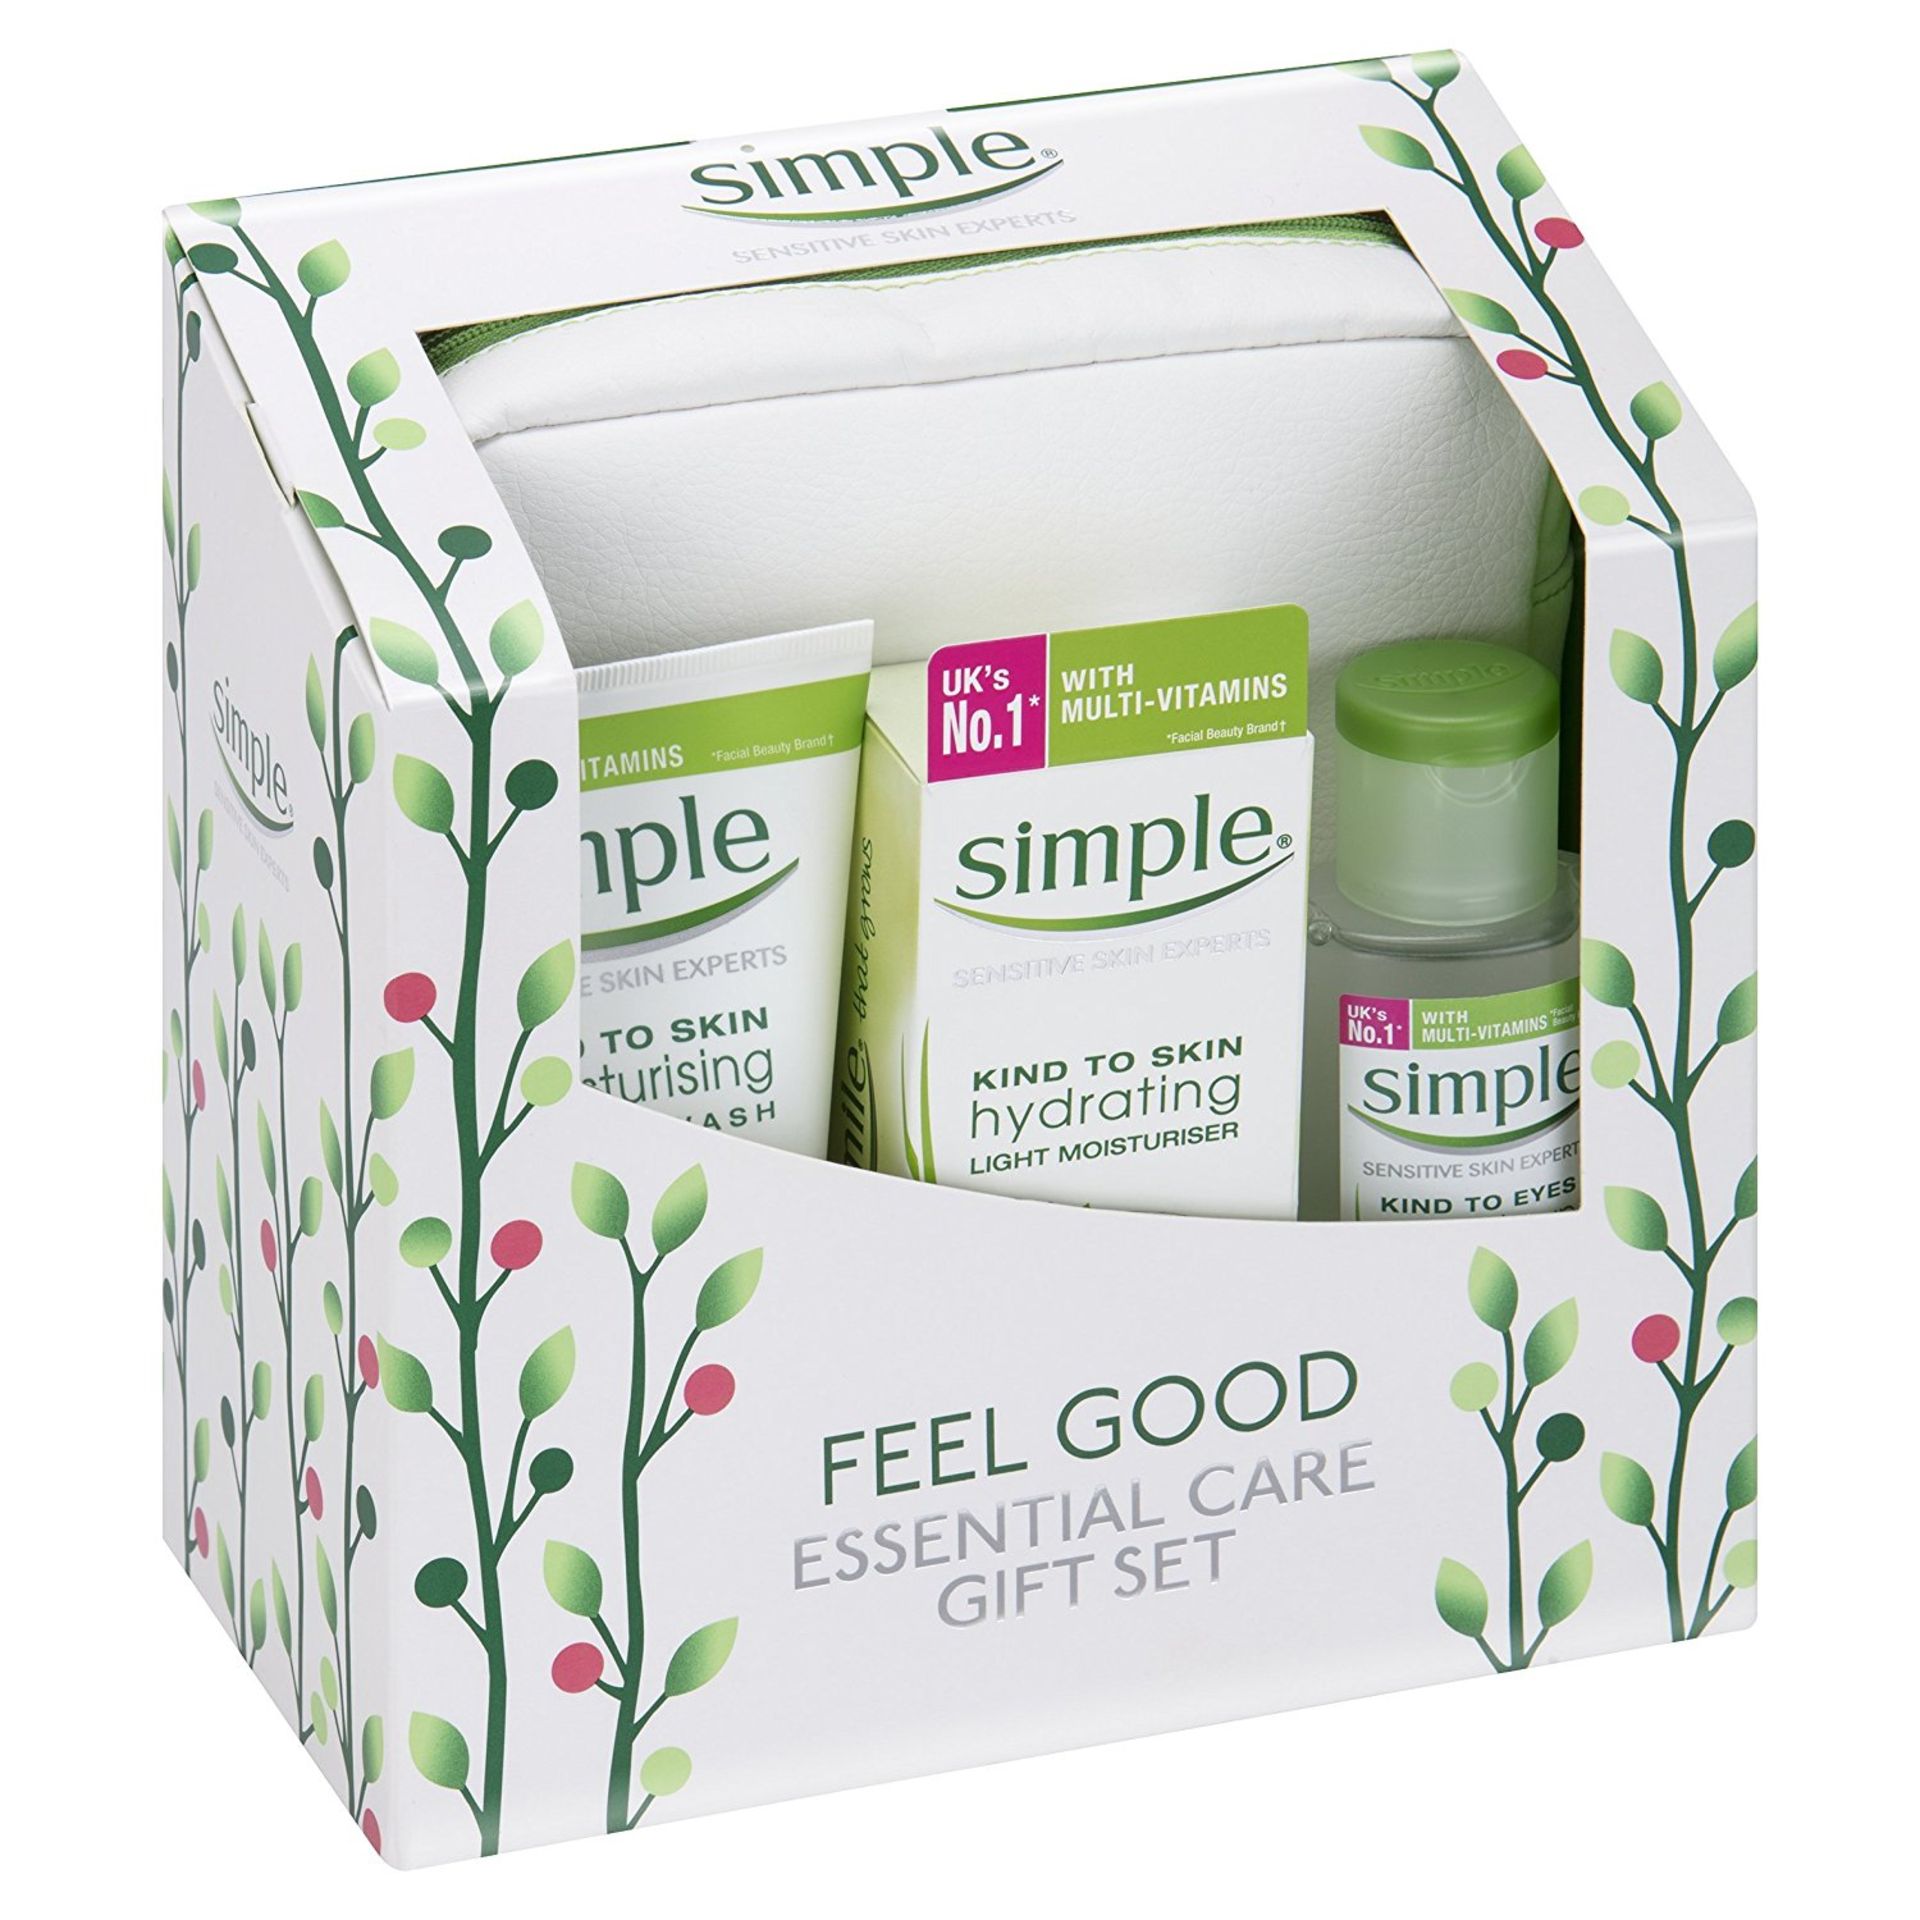 V Brand New Simple Feel Good Essential Care Gift Set £15.40 (Beanbone UK)